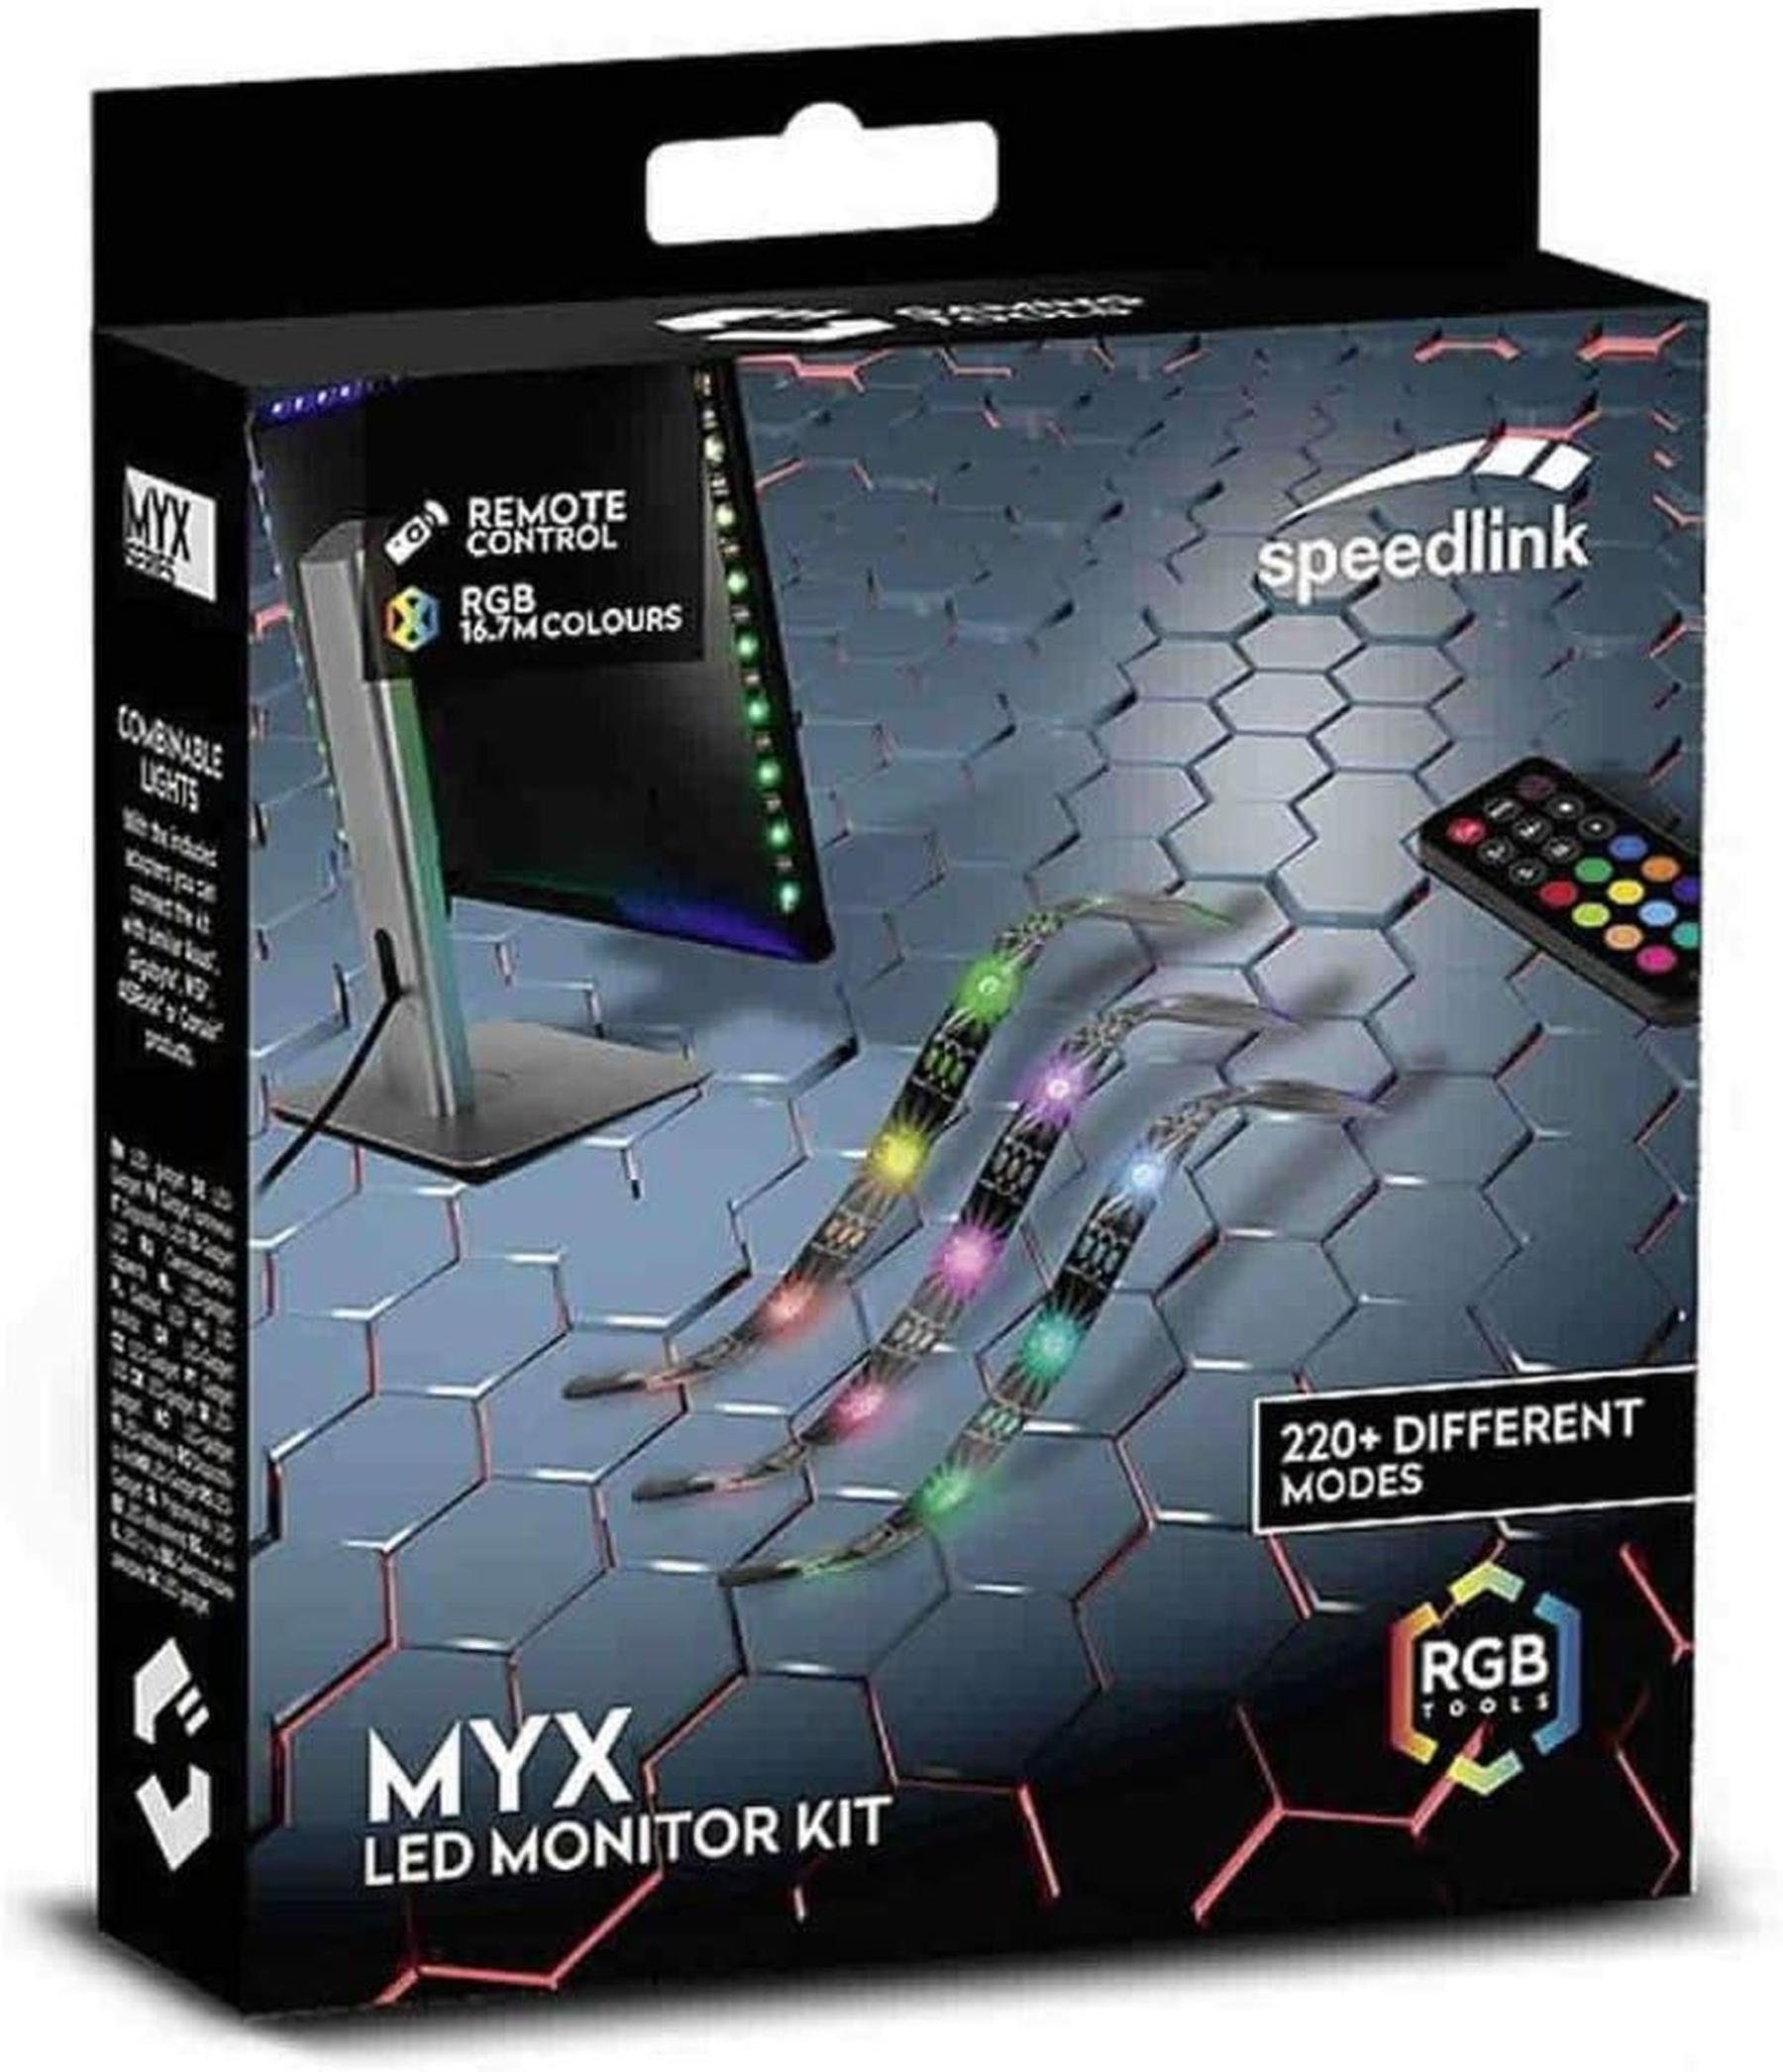 Speedlink LED Stripe MYX LED Monitor Kit, Über 220 verschiedene  Beleuchtungsmodi | Alle Modi per Fernbedienung einstellbar